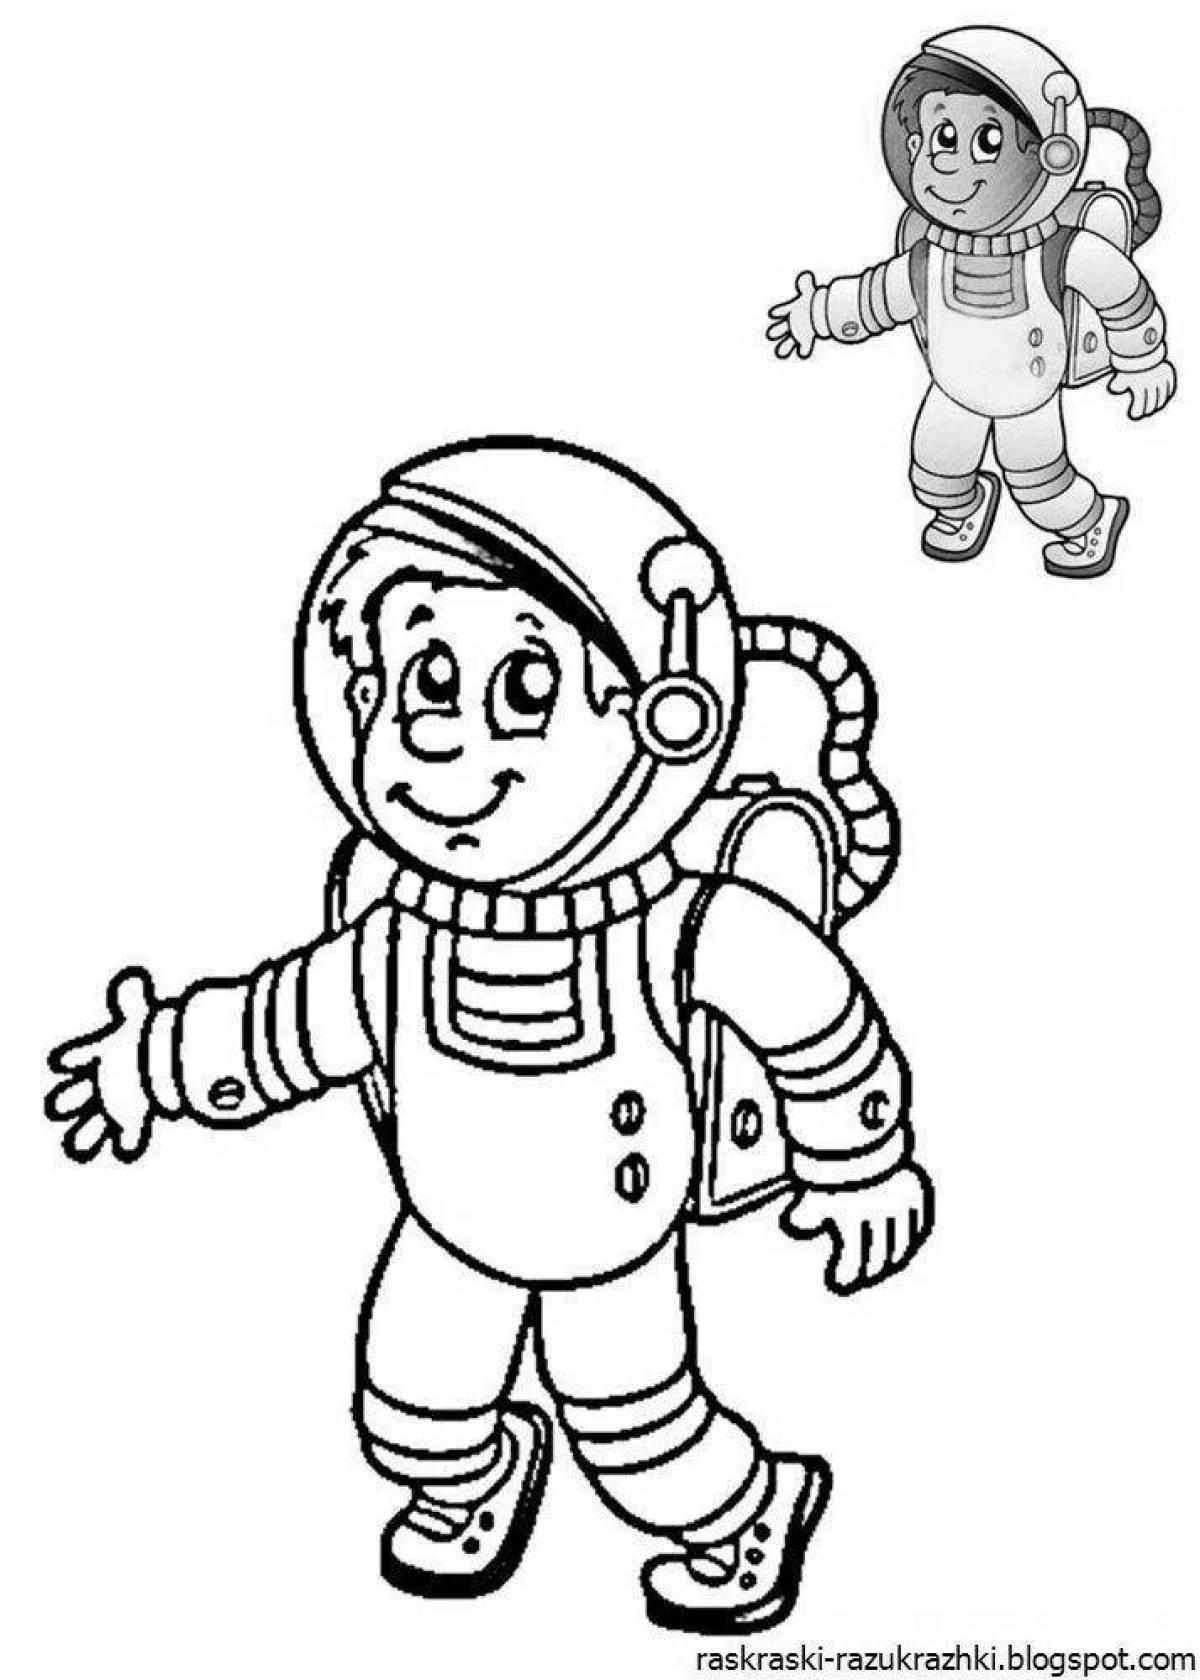 Великолепный астронавт раскраски для детей